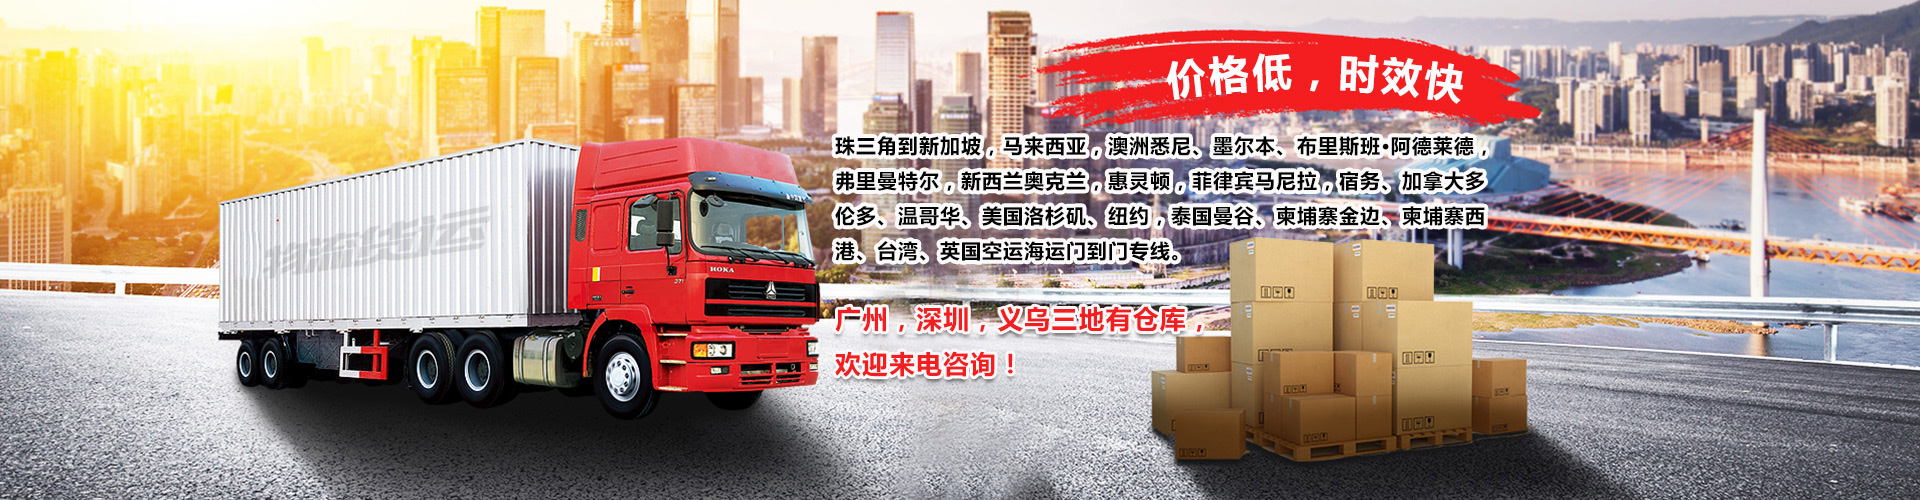 深圳危险品出口运输服务 欢迎来电洽谈